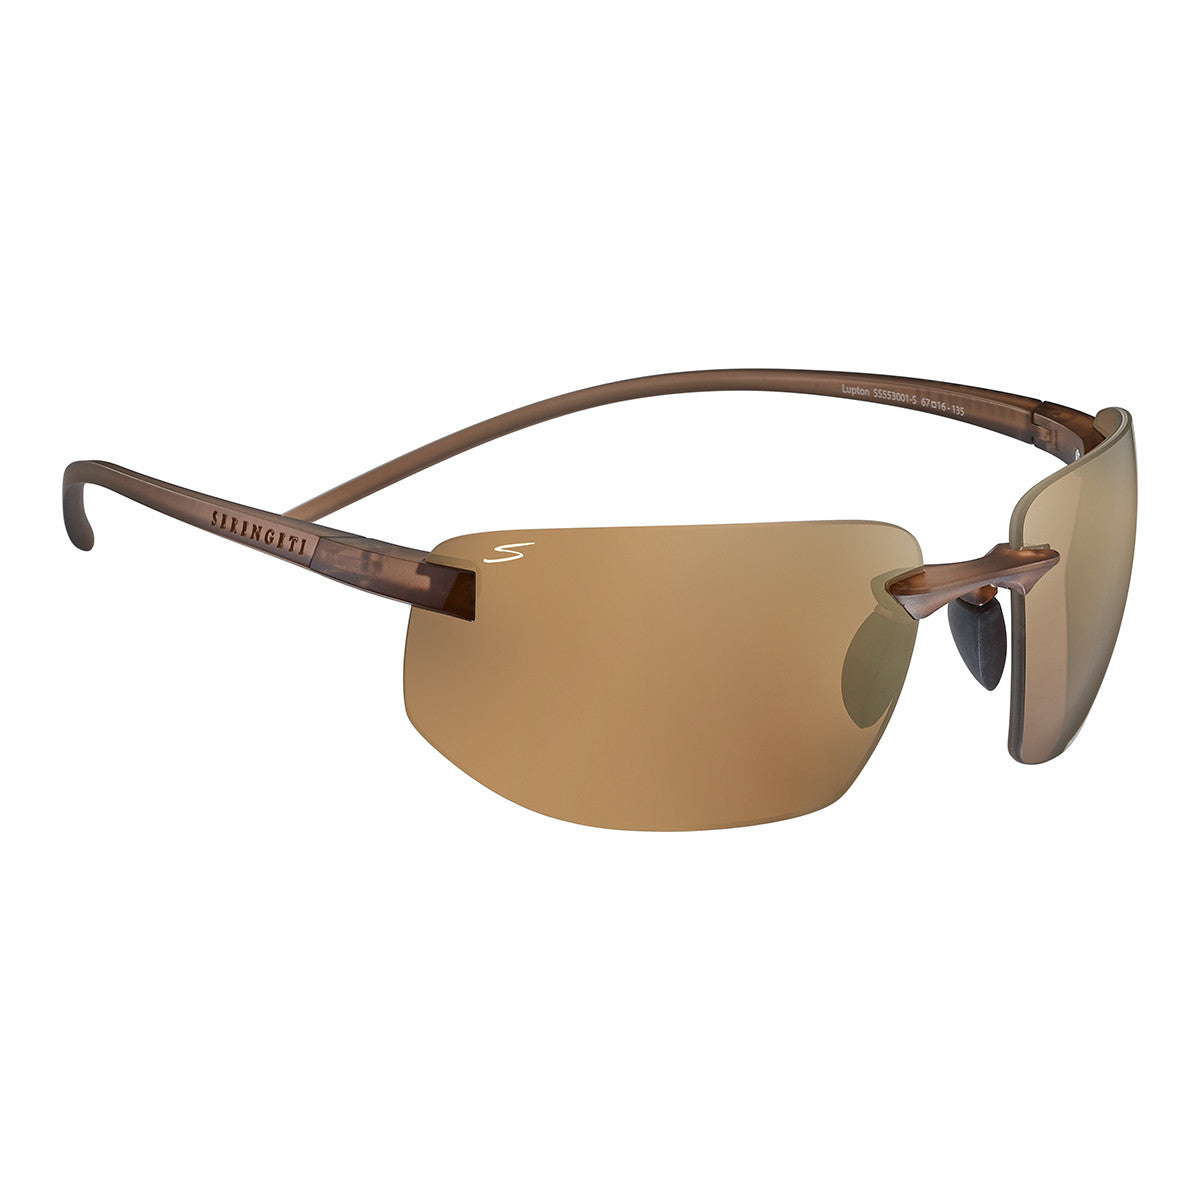 Serengeti Lupton Sunglasses  Matte Crystal Light Brown Medium, Medium-Large